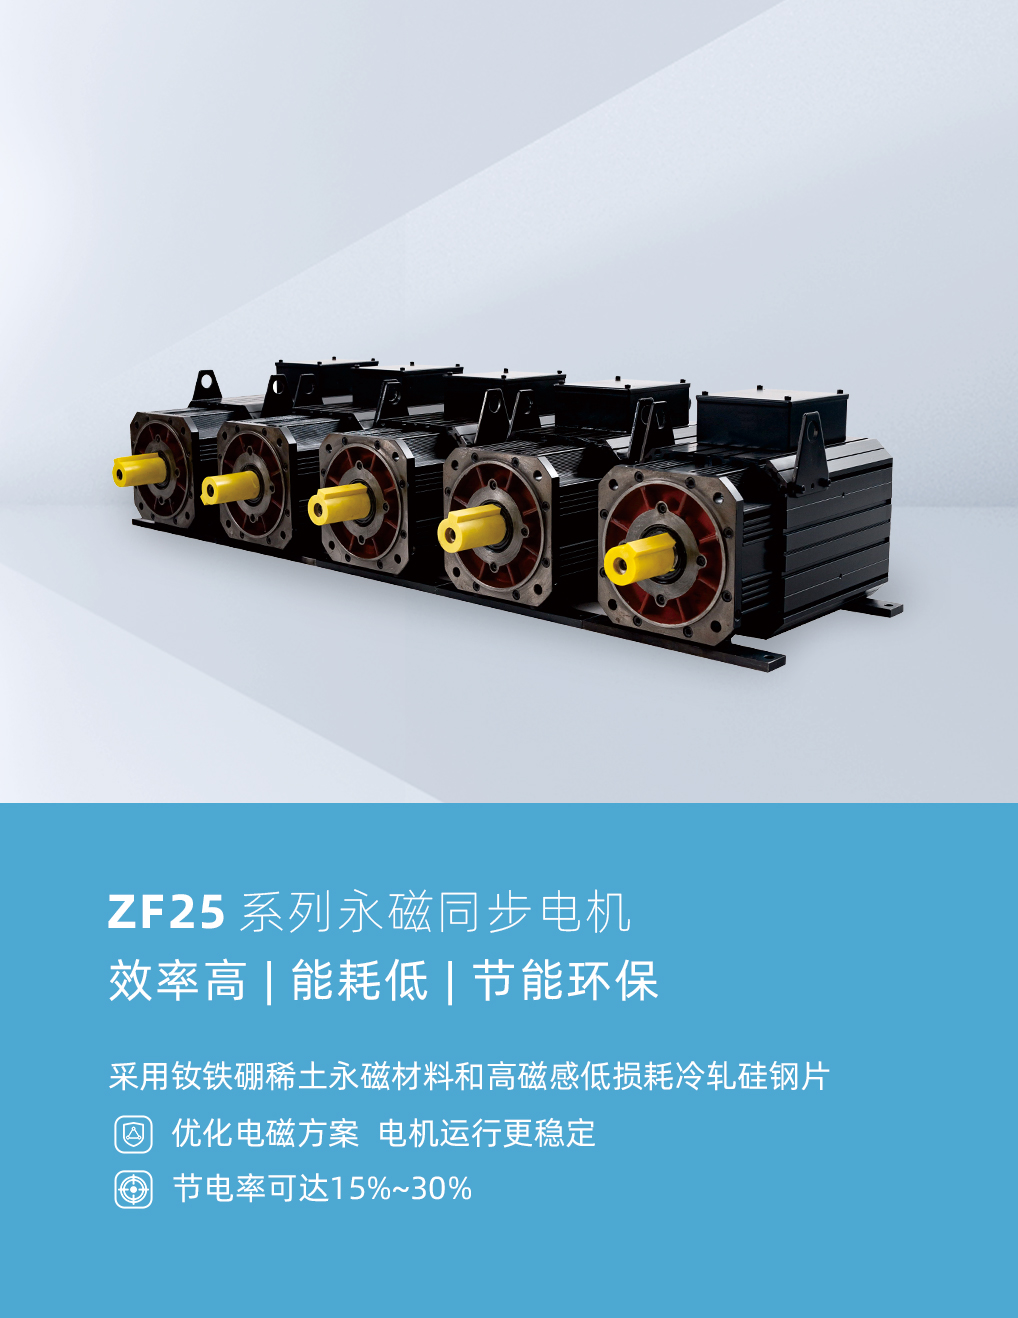 ZF25系列永磁同步电机.jpg